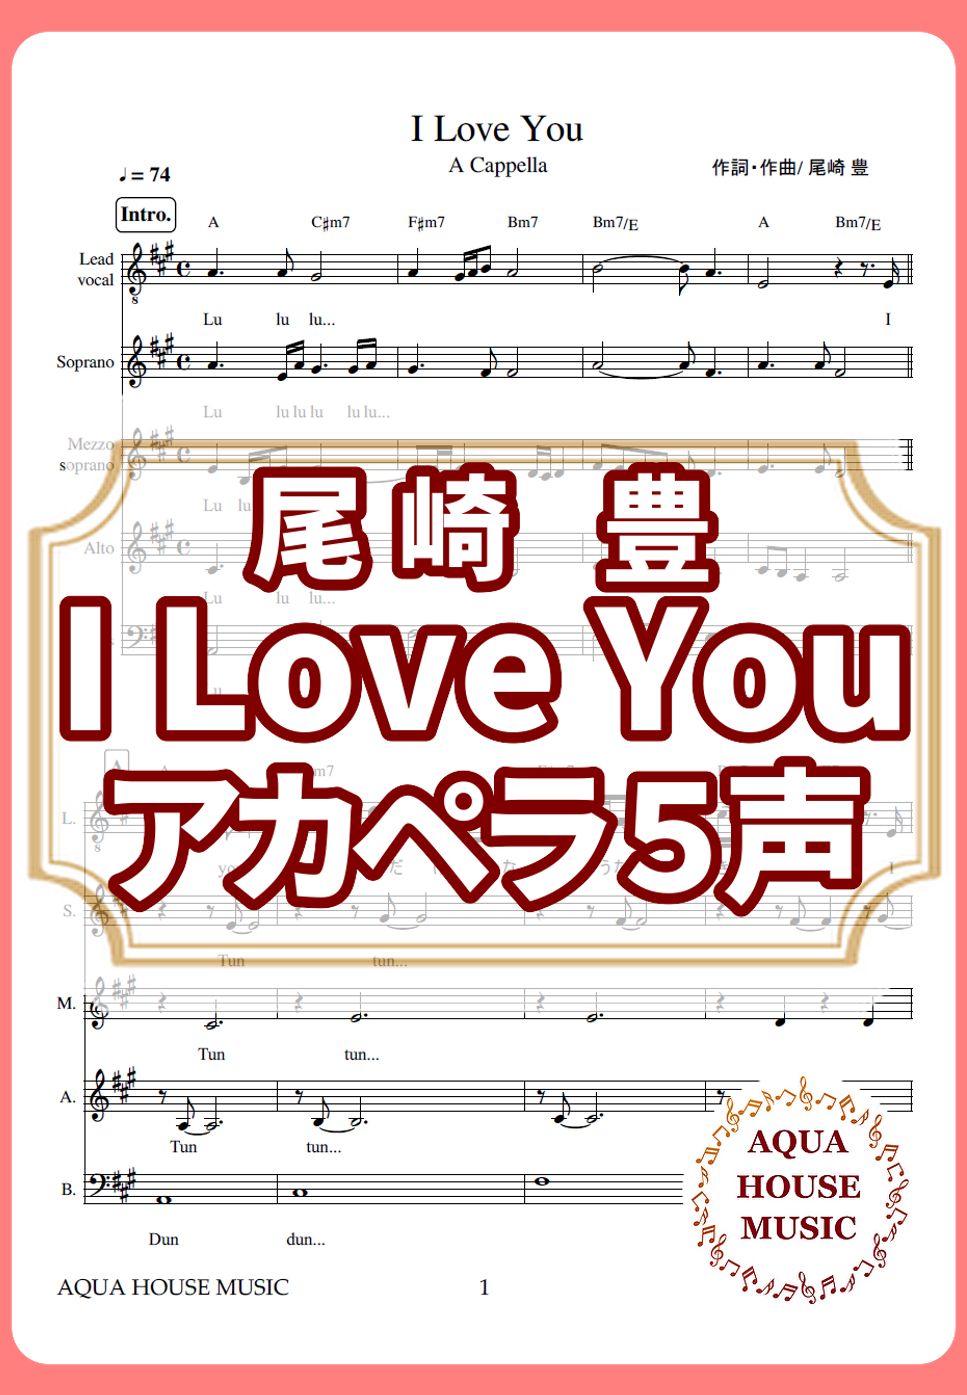 尾崎 豊 - I Love You (アカペラ楽譜♪5声ボイパなし) by 飯田 亜紗子